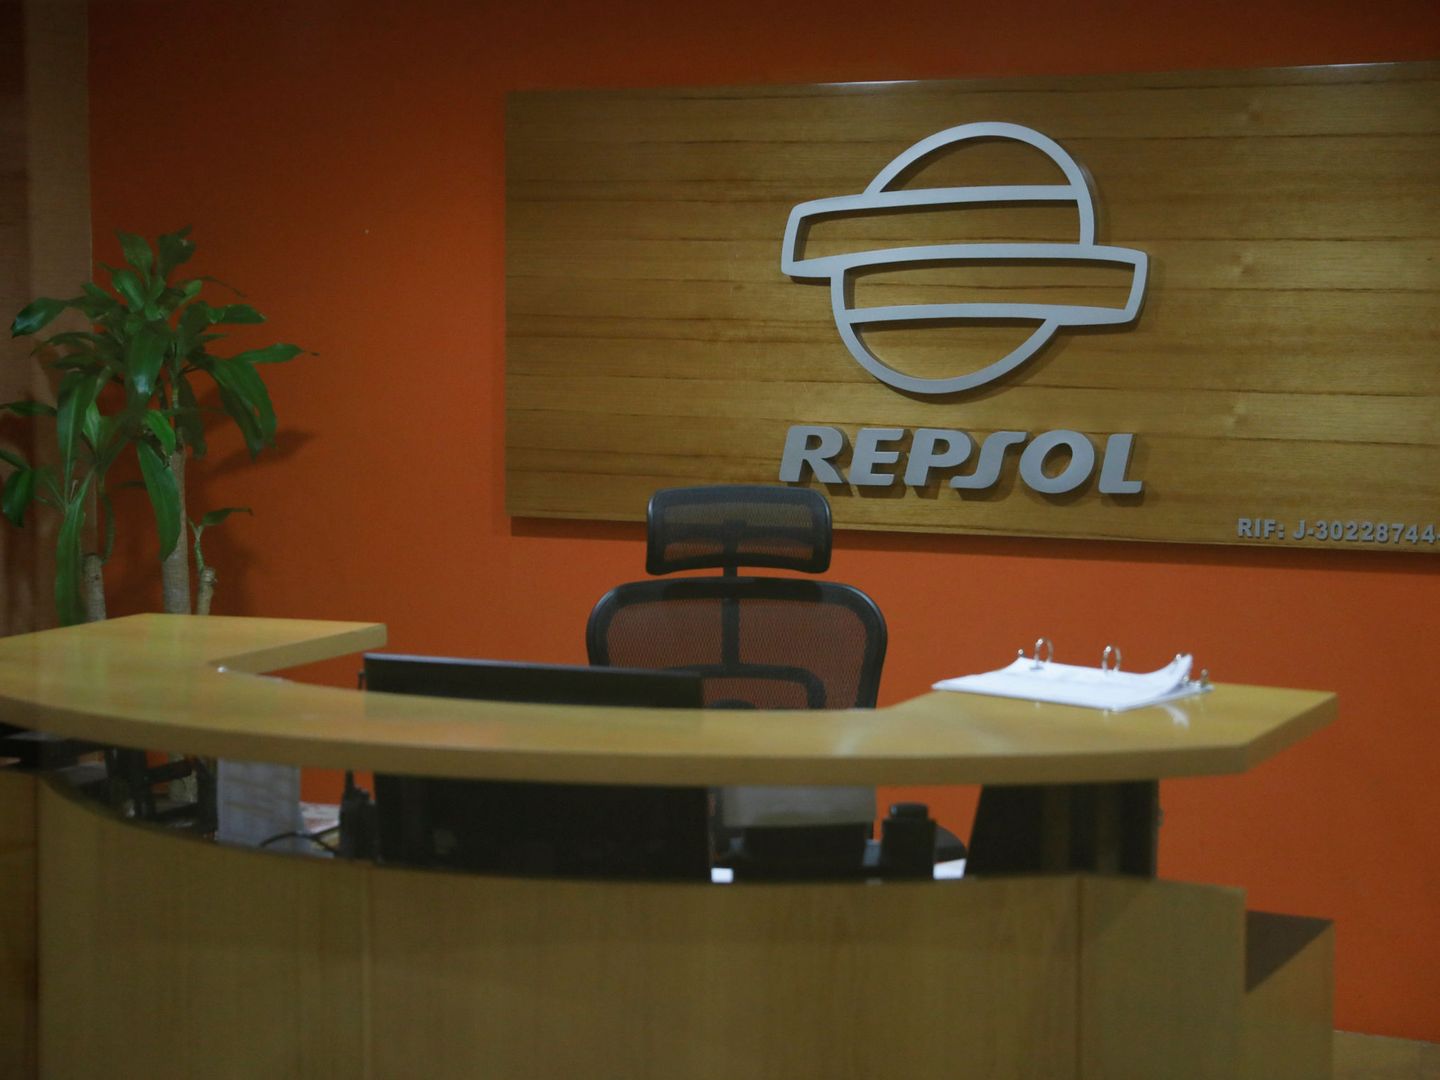 Oficina de Repsol en Venezuela. (Reuters)